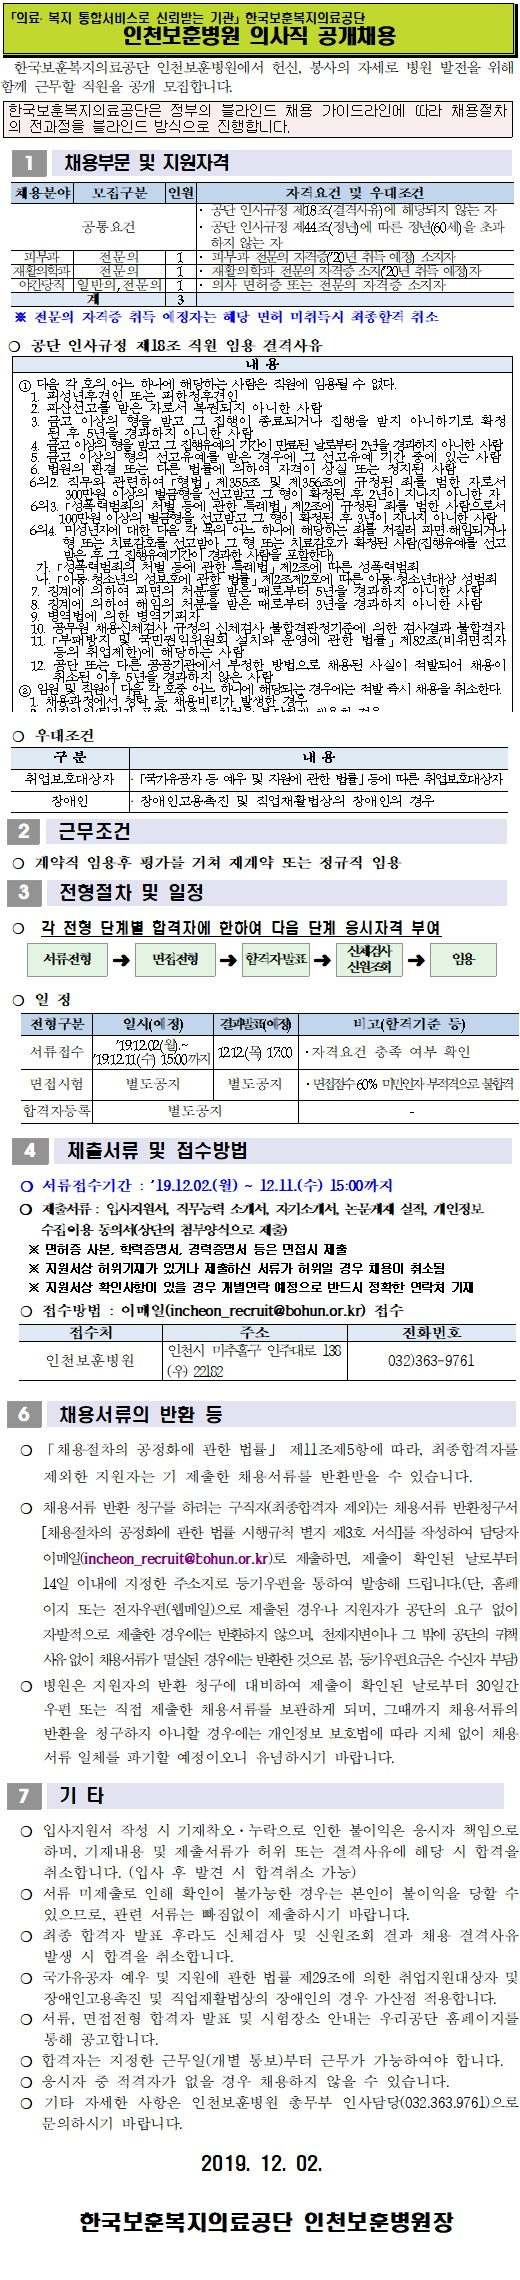 [채용][한국보훈복지의료공단] [인천보훈병원] 의사직 공개채용 공고